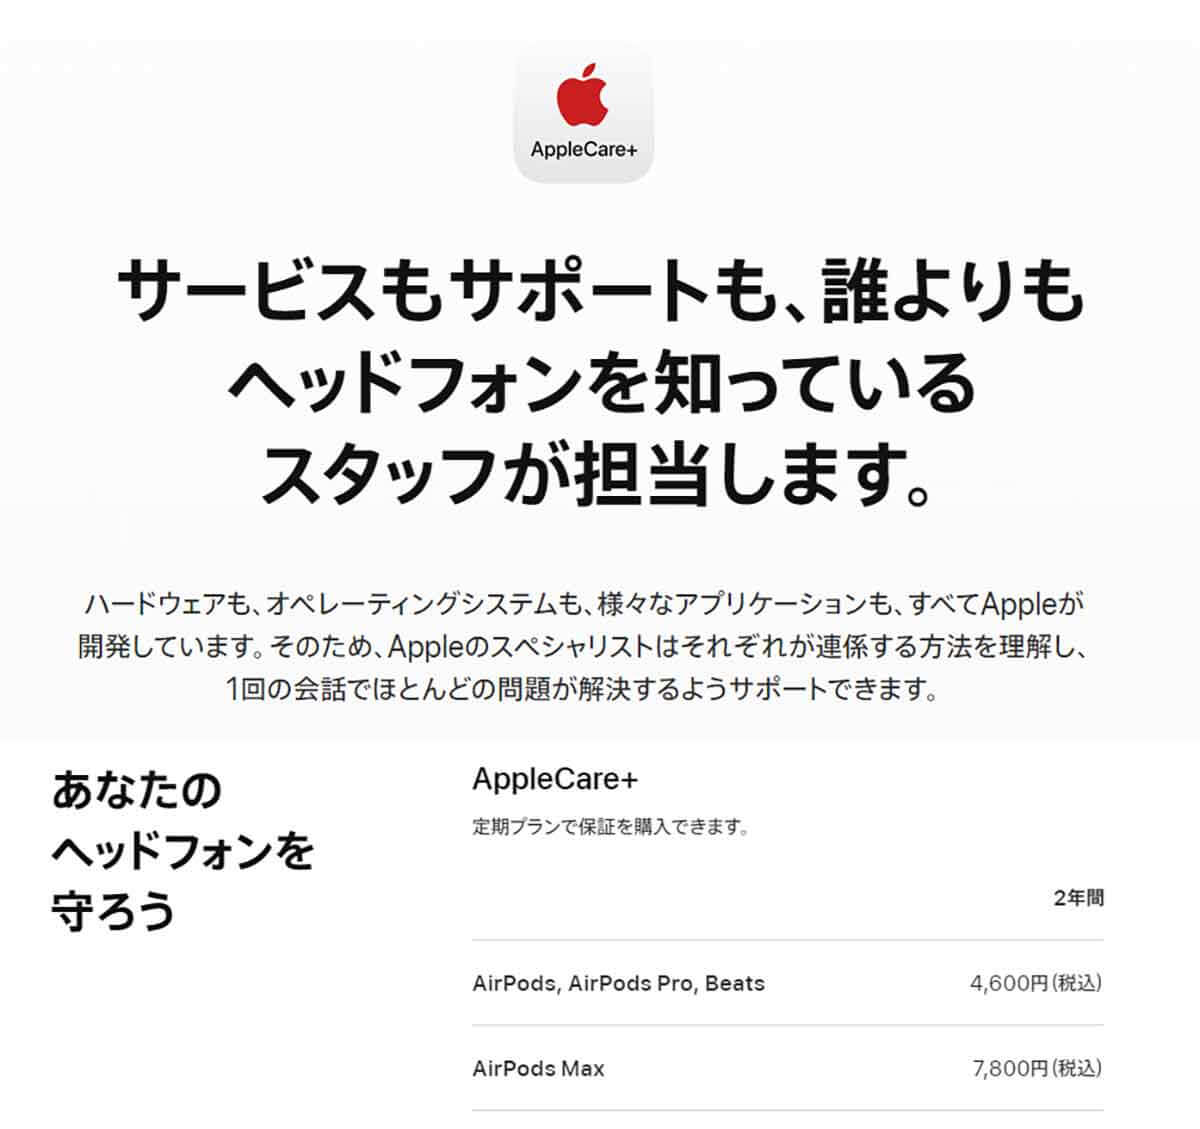 Apple Care+に加入しているならバッテリー交換も0円に1